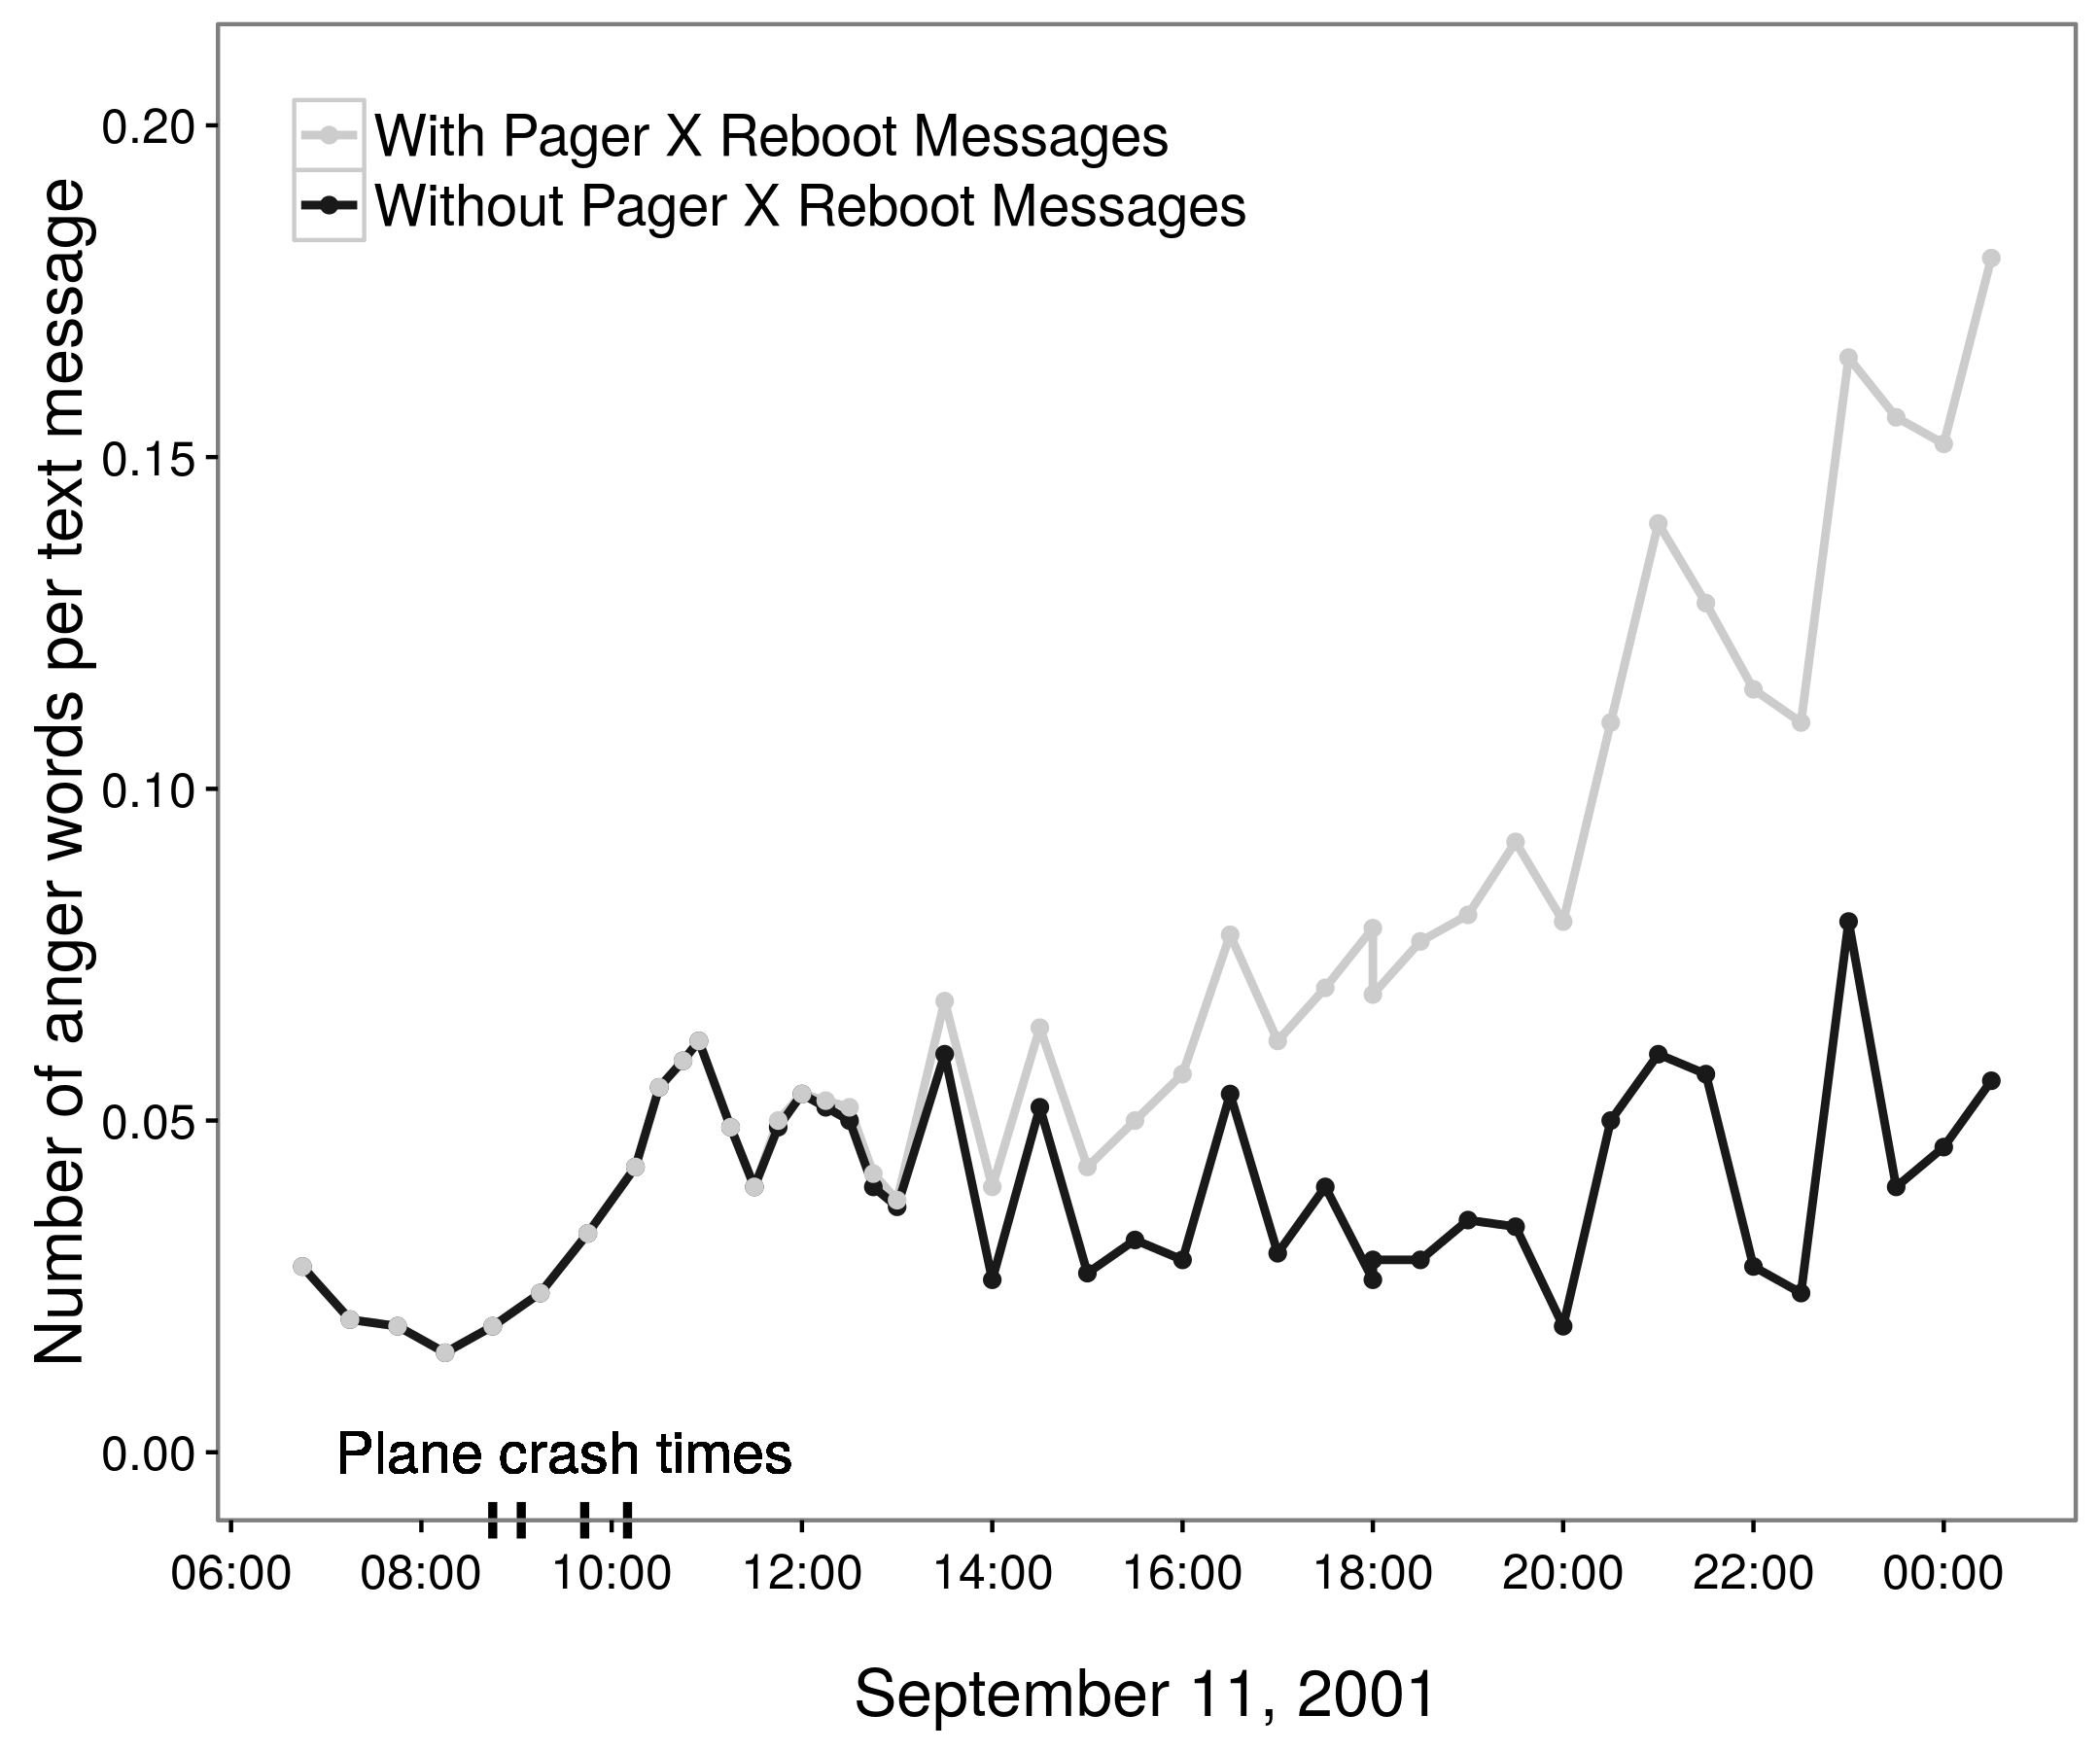 Kuva 2.4: Arvioiden trendi 11. syyskuuta 2001, joka perustuu 85 000 amerikkalaiseen hakulaitteeseen (Back, Küfner ja Egloff 2010, 2011, Pury 2011). Alun perin Back, Küfner ja Egloff (2010) ilmoittivat, että yhä enemmän vihaa koko päiväksi. Kuitenkin useimmat näistä ilmeisesti vihaisista viesteistä luotiin yhdellä hakulaitteella, joka toistuvasti lähetti seuraavan viestin: Käynnistä NT kone [nimi] kaappiin [nimi] kohteessa [sijainti]: CRITICAL: [päivämäärä ja kellonaika]. Kun tämä viesti poistetaan, vihan ilmeinen lisääntyminen katoaa (Pury 2011, Back, Küfner ja Egloff 2011). Mukautettu Pury (2011), kuva 1b.